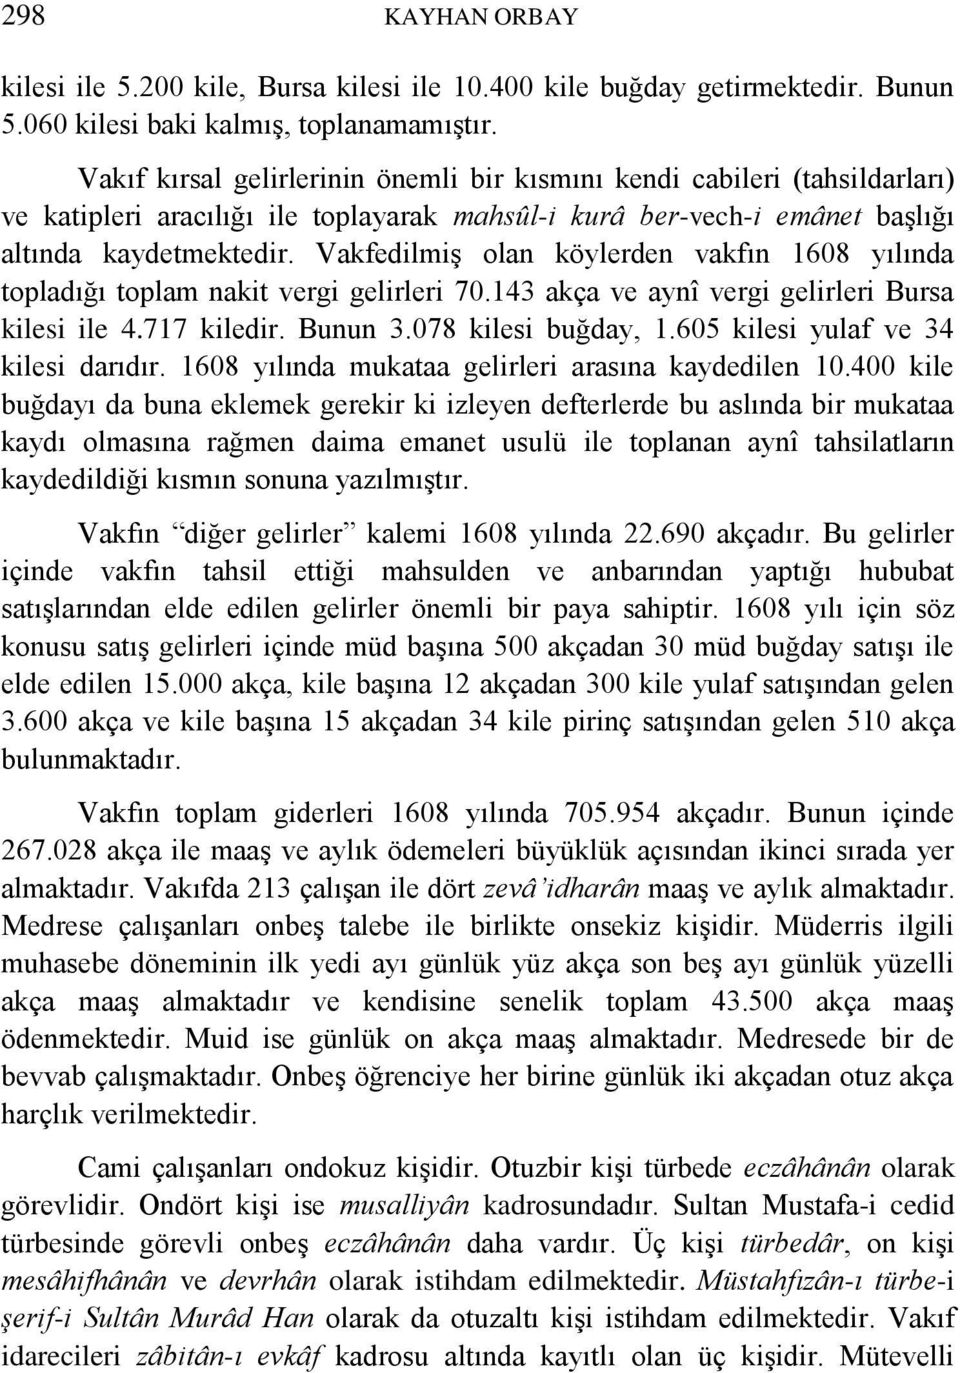 Vakfedilmiş olan köylerden vakfın 1608 yılında topladığı toplam nakit vergi gelirleri 70.143 akça ve aynî vergi gelirleri Bursa kilesi ile 4.717 kiledir. Bunun 3.078 kilesi buğday, 1.